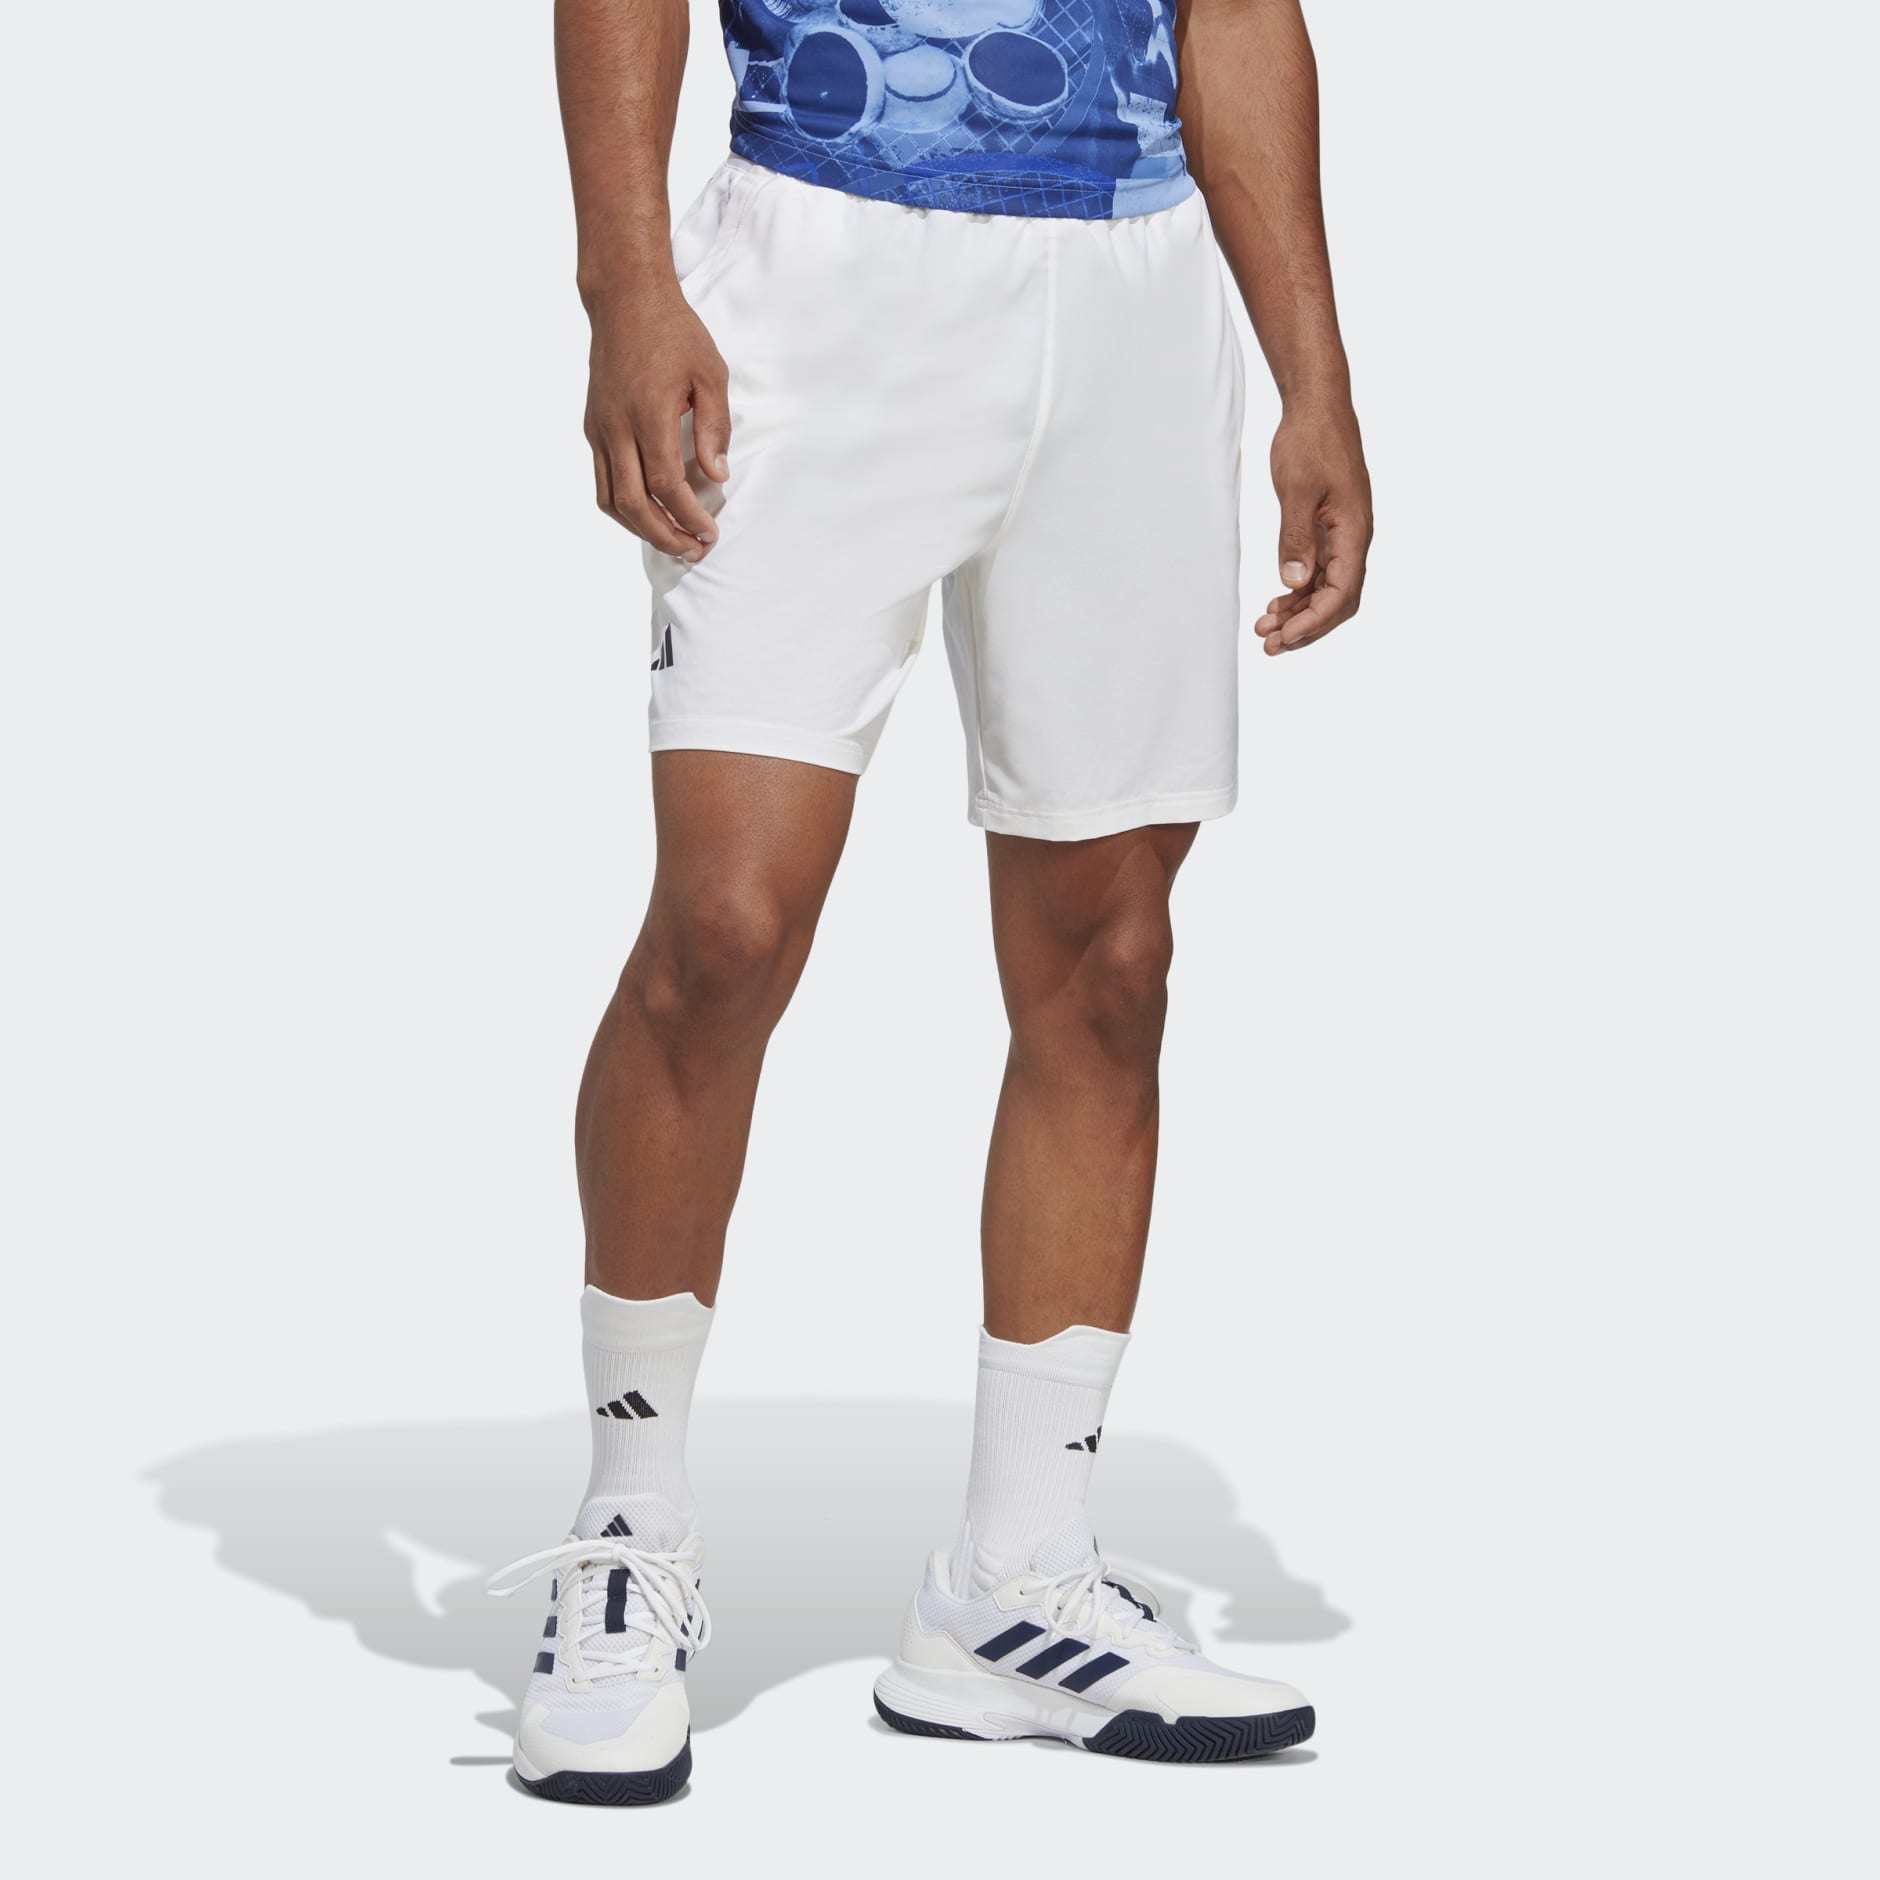 ongezond verslag doen van Op de kop van Men's Clothing - Club Tennis Stretch Woven Shorts - White | adidas Oman